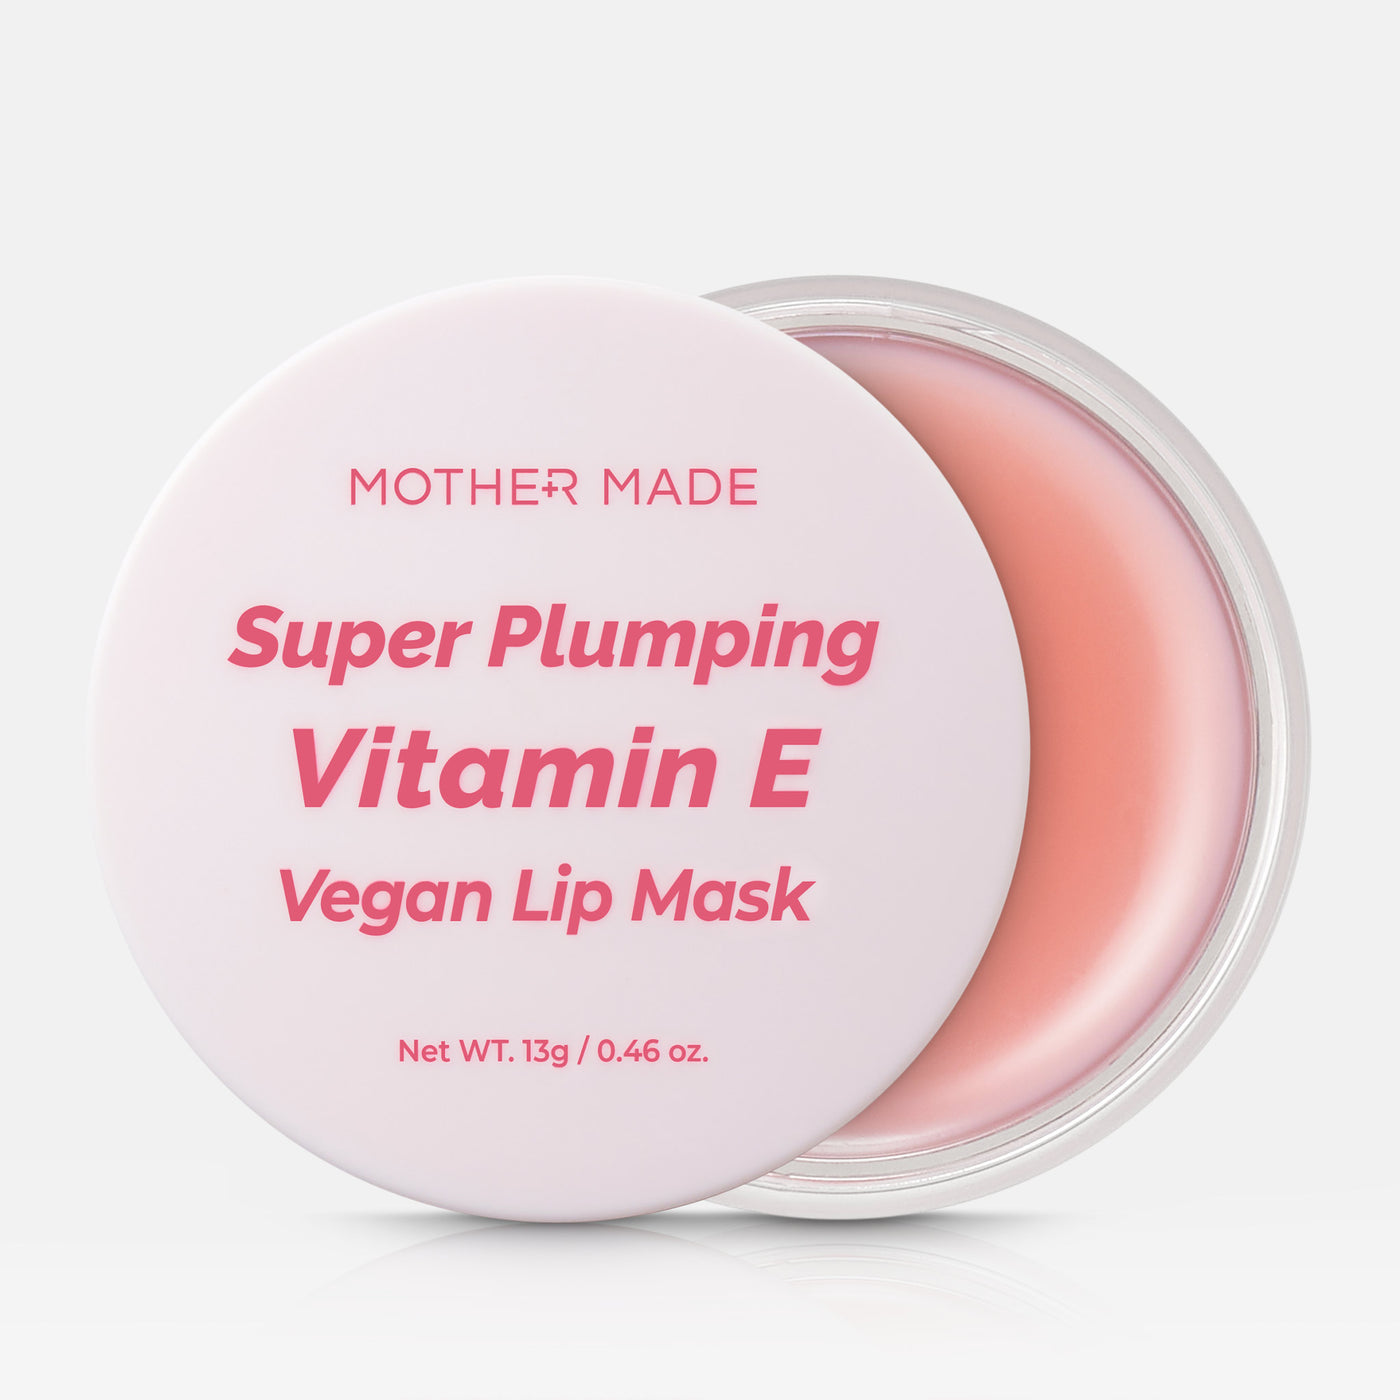 Super Plumping Vitamin E Vegan Lip Mask